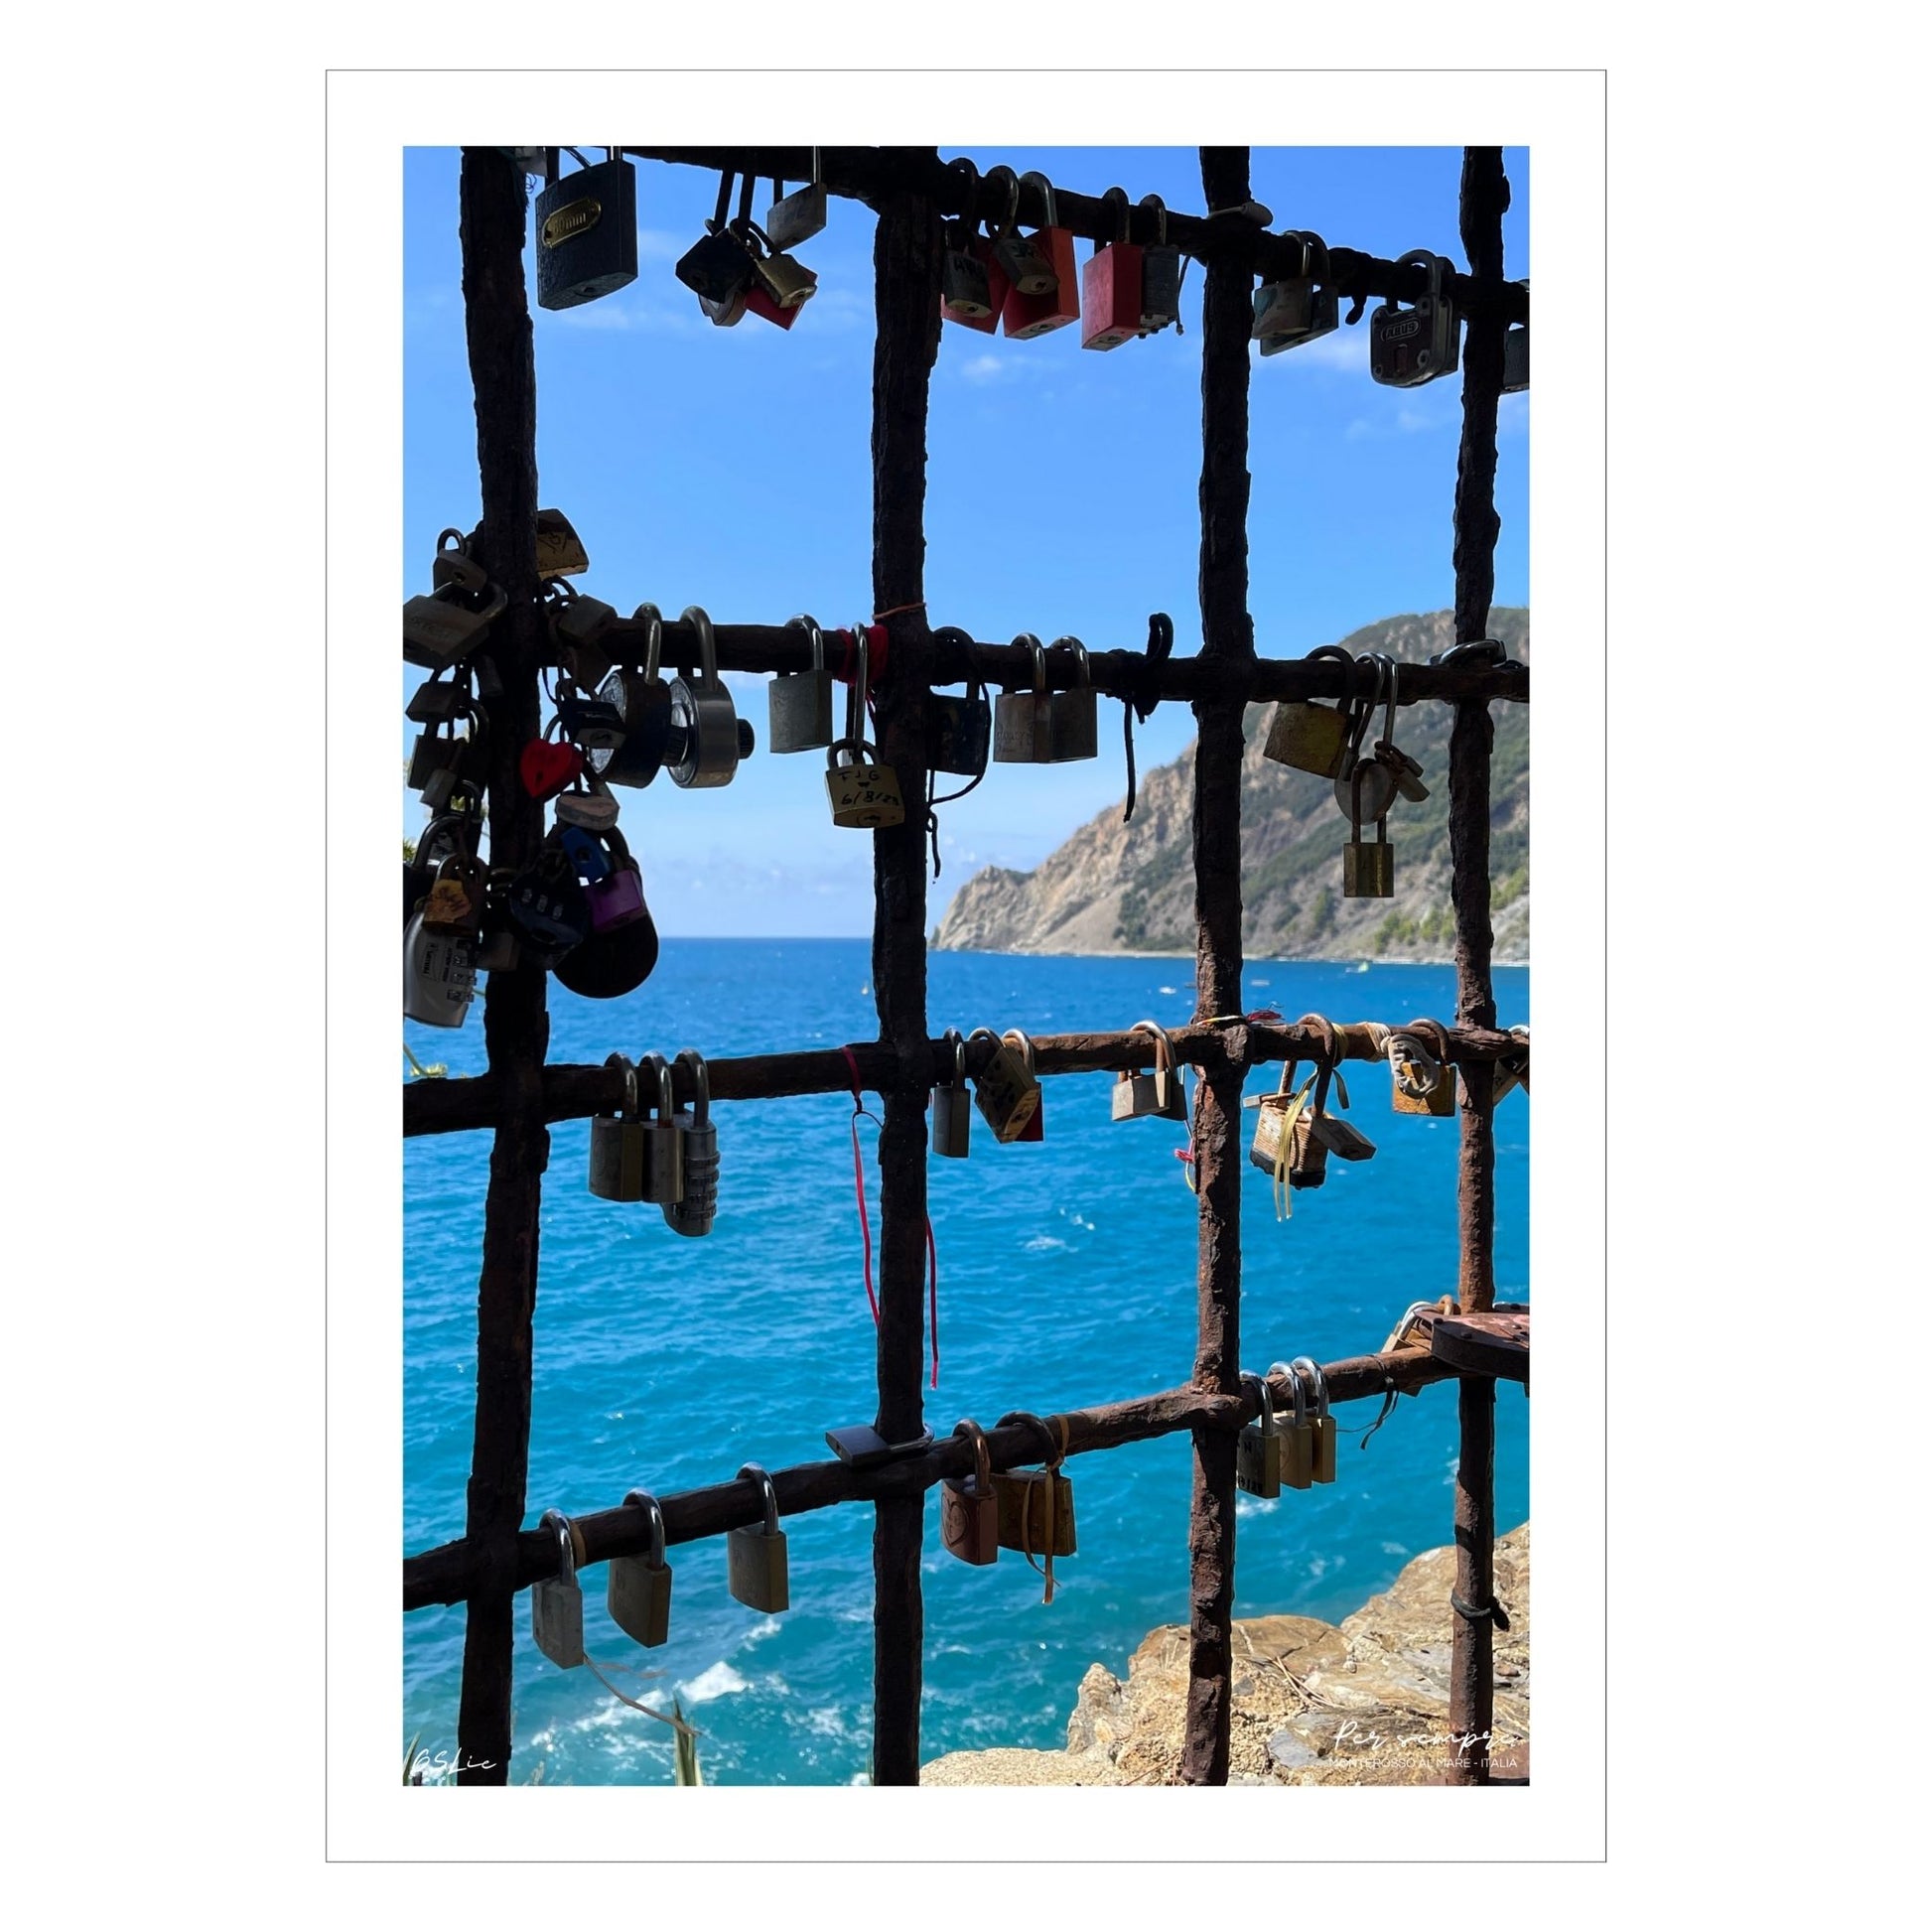 Bildet viser en mur med en åpning med et gitter, der det er hengt opp hengelås med håp om et langt liv i kjærlighet. Gjennom gitteret ses det blåe Middelhavet og klippene som går ned i sjøen.